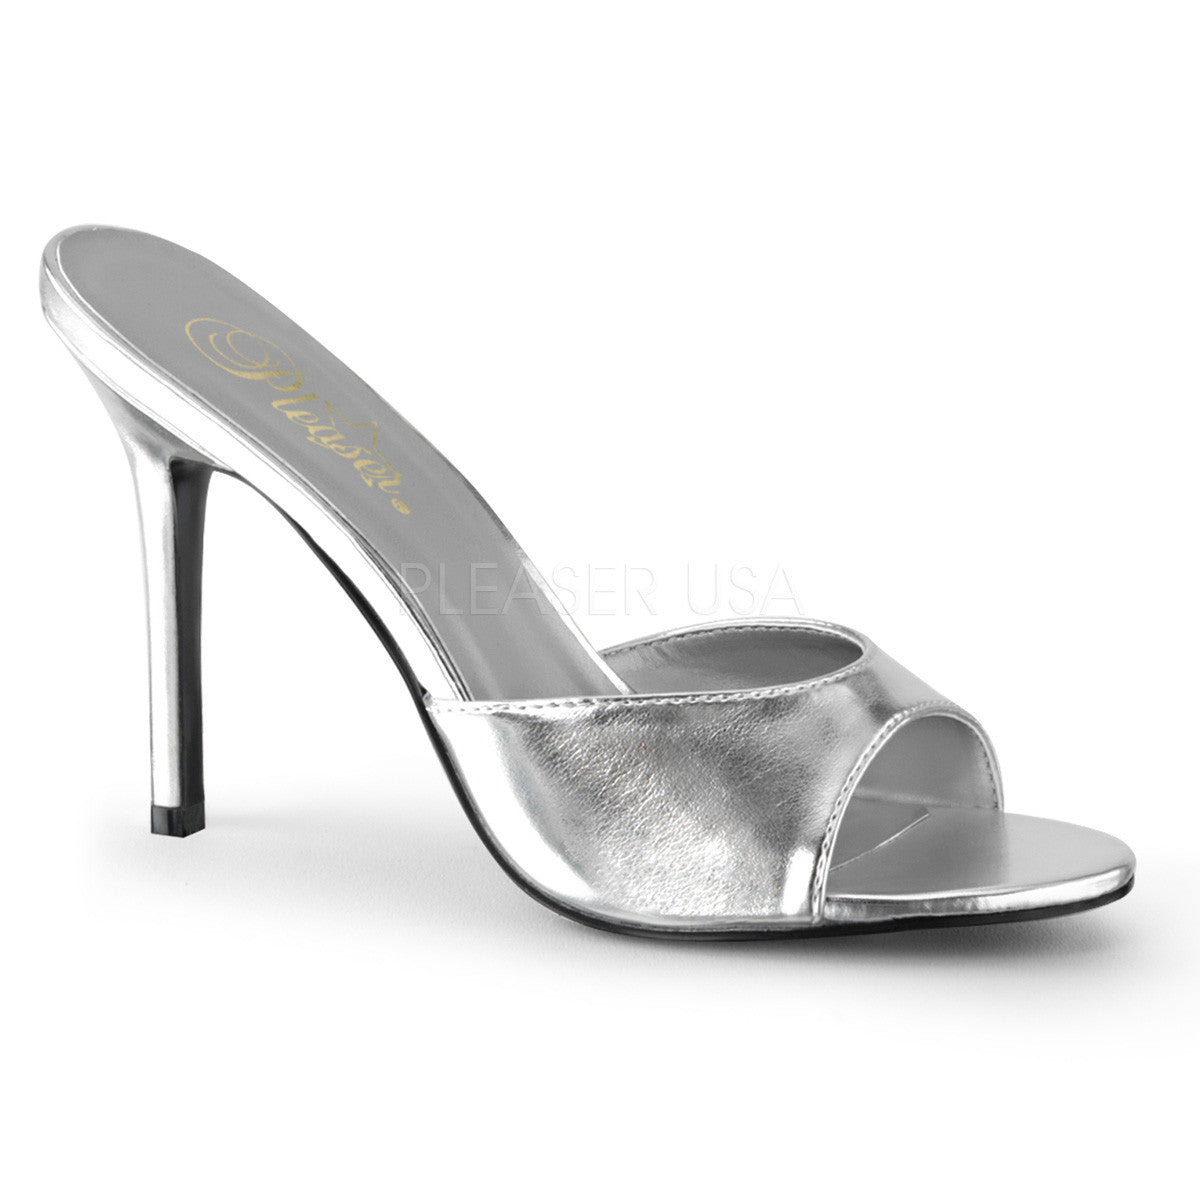 Pleaser CLASSIQUE-01 Silver Metallic Pu Slides - Shoecup.com